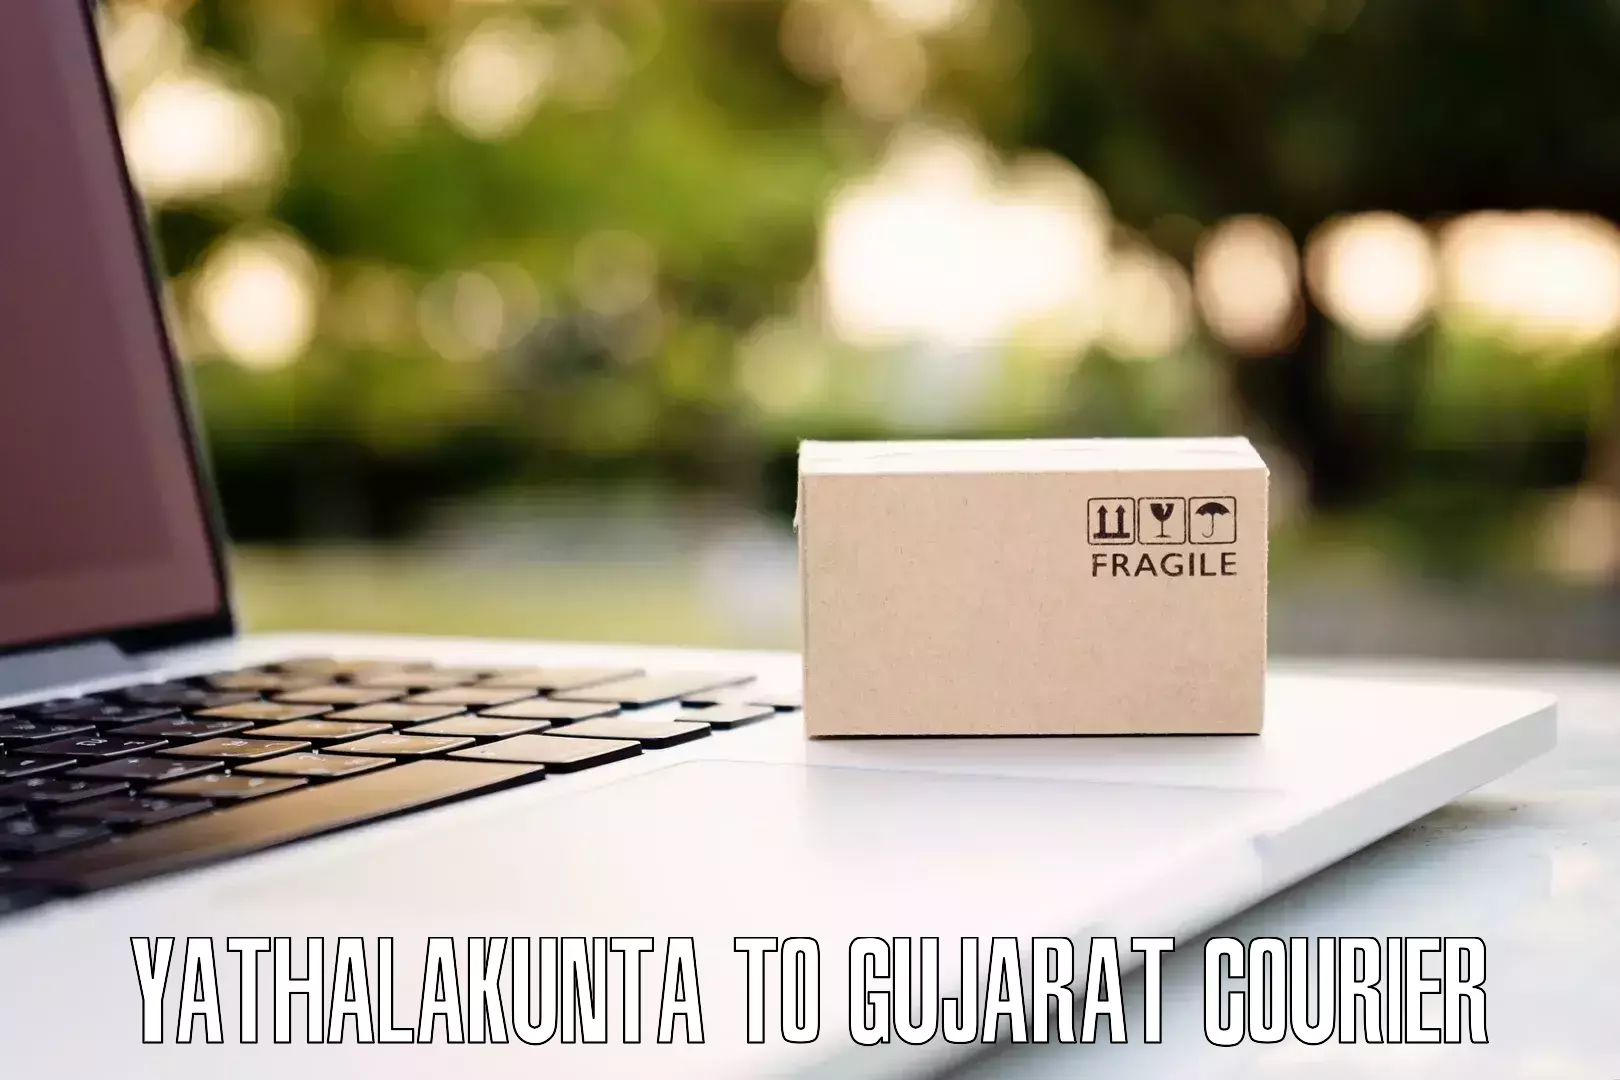 Luggage courier rates calculator Yathalakunta to Vyara